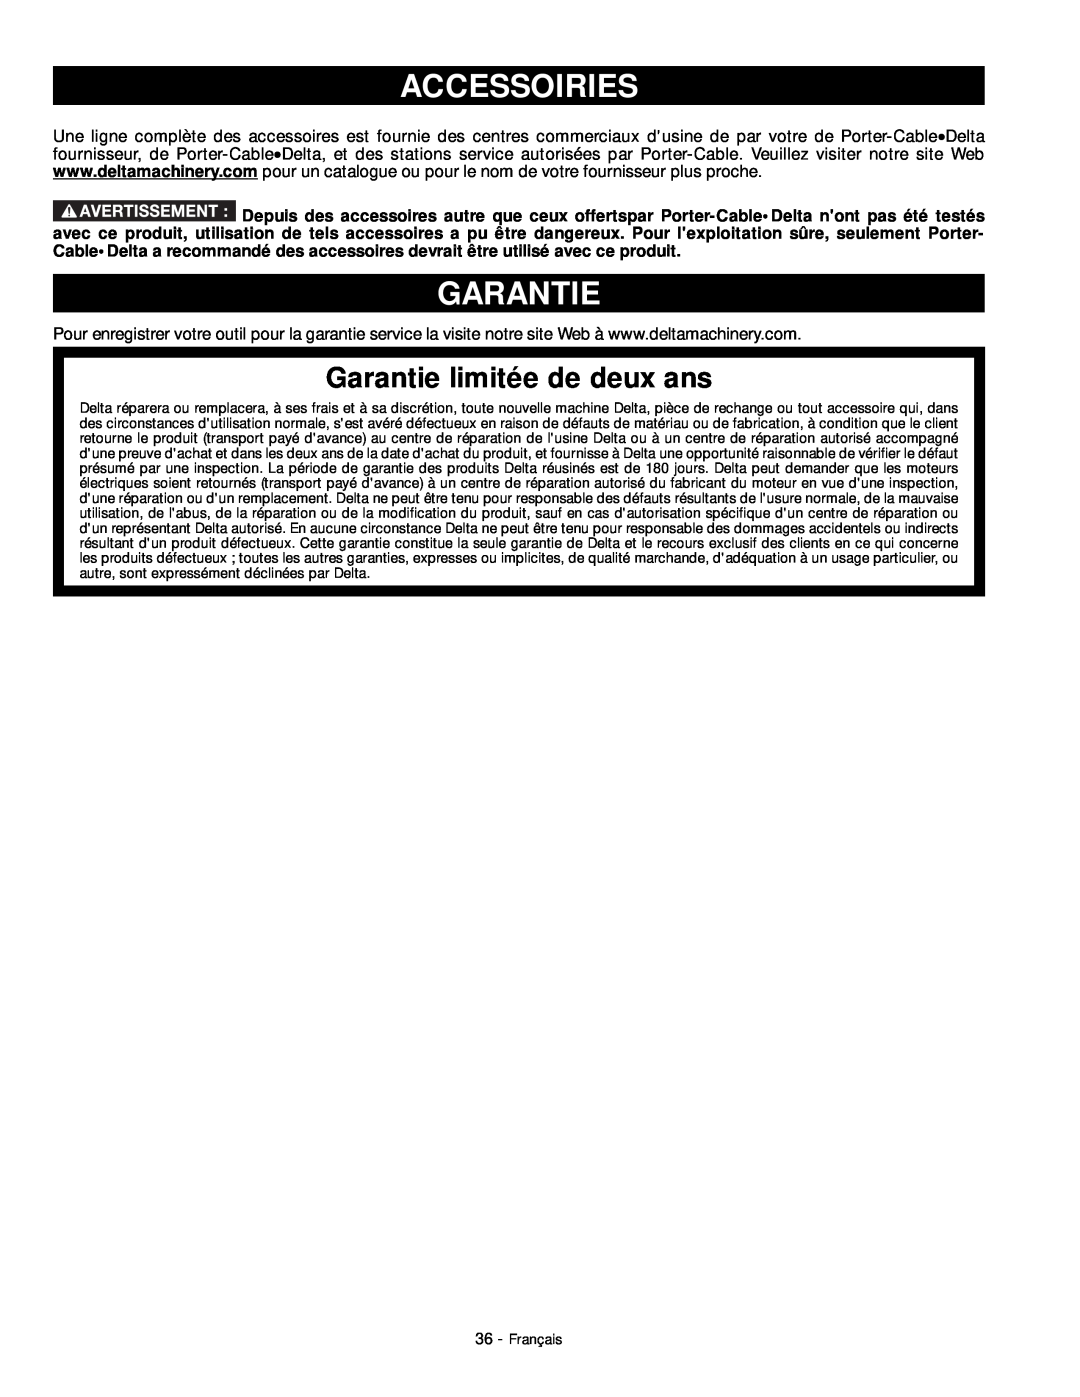 DeWalt 18657 instruction manual Accessoiries, Garantie limitée de deux ans 